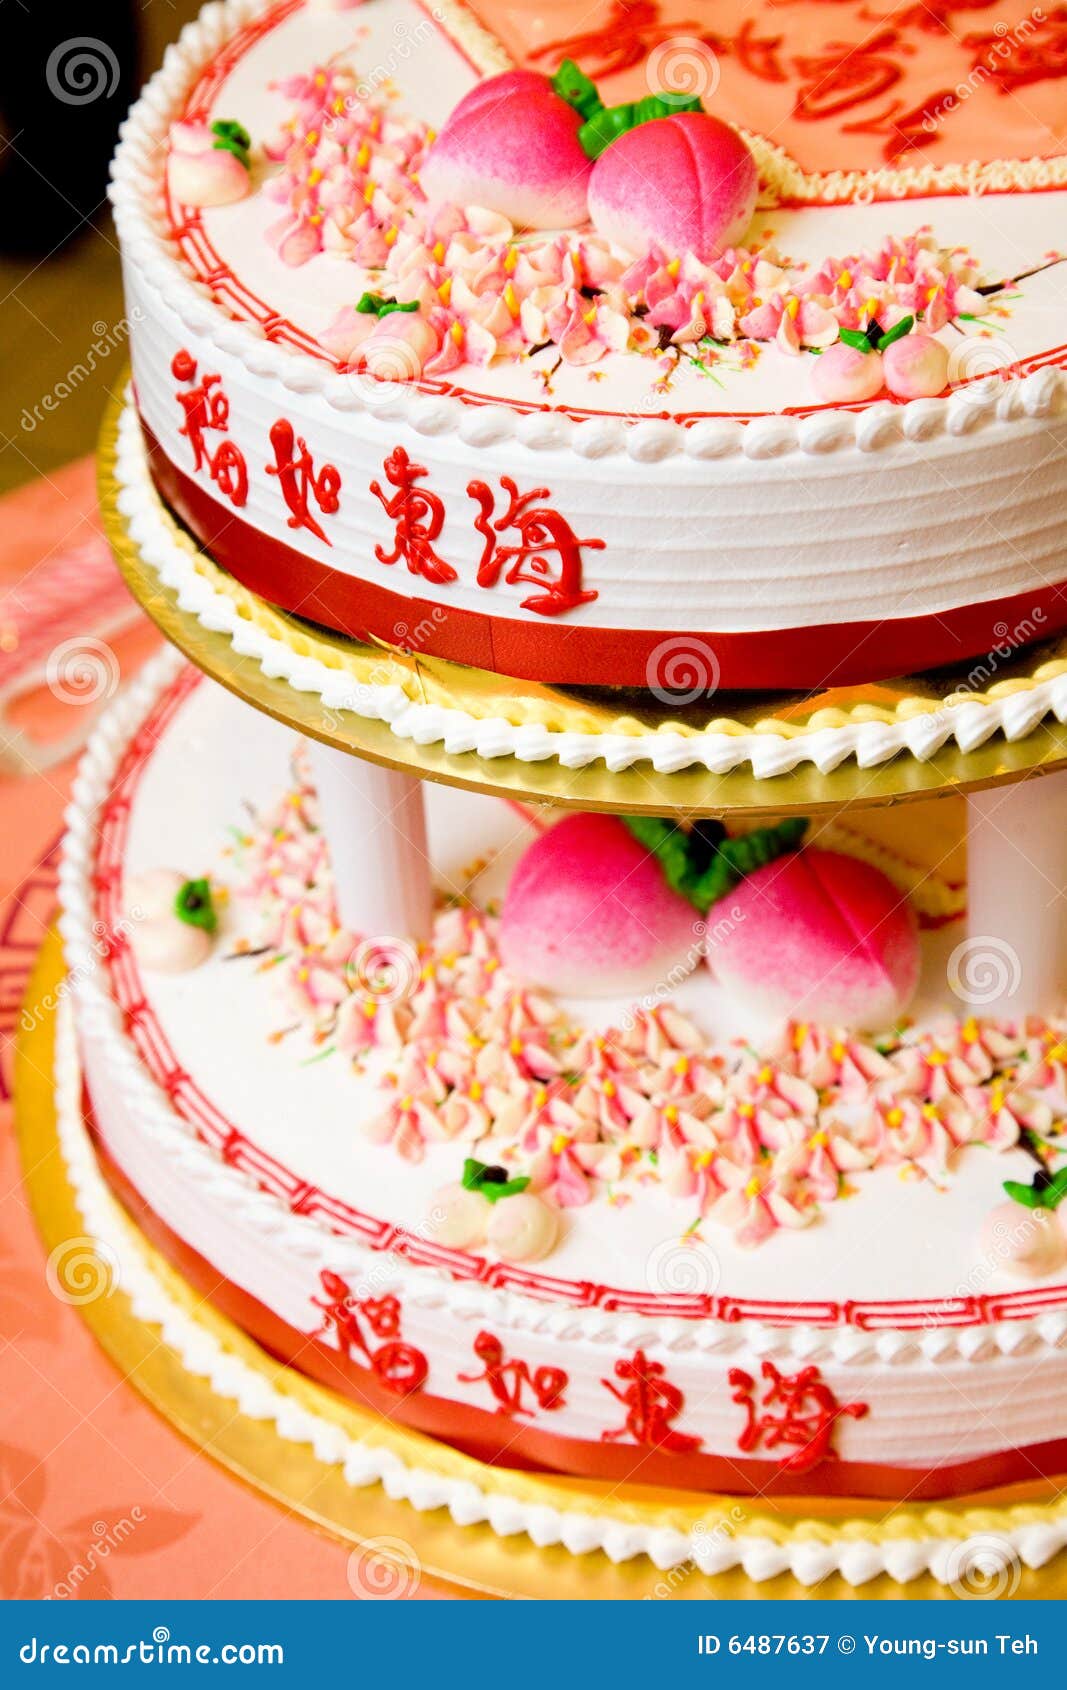 traditional chinese birthday cake 6487637